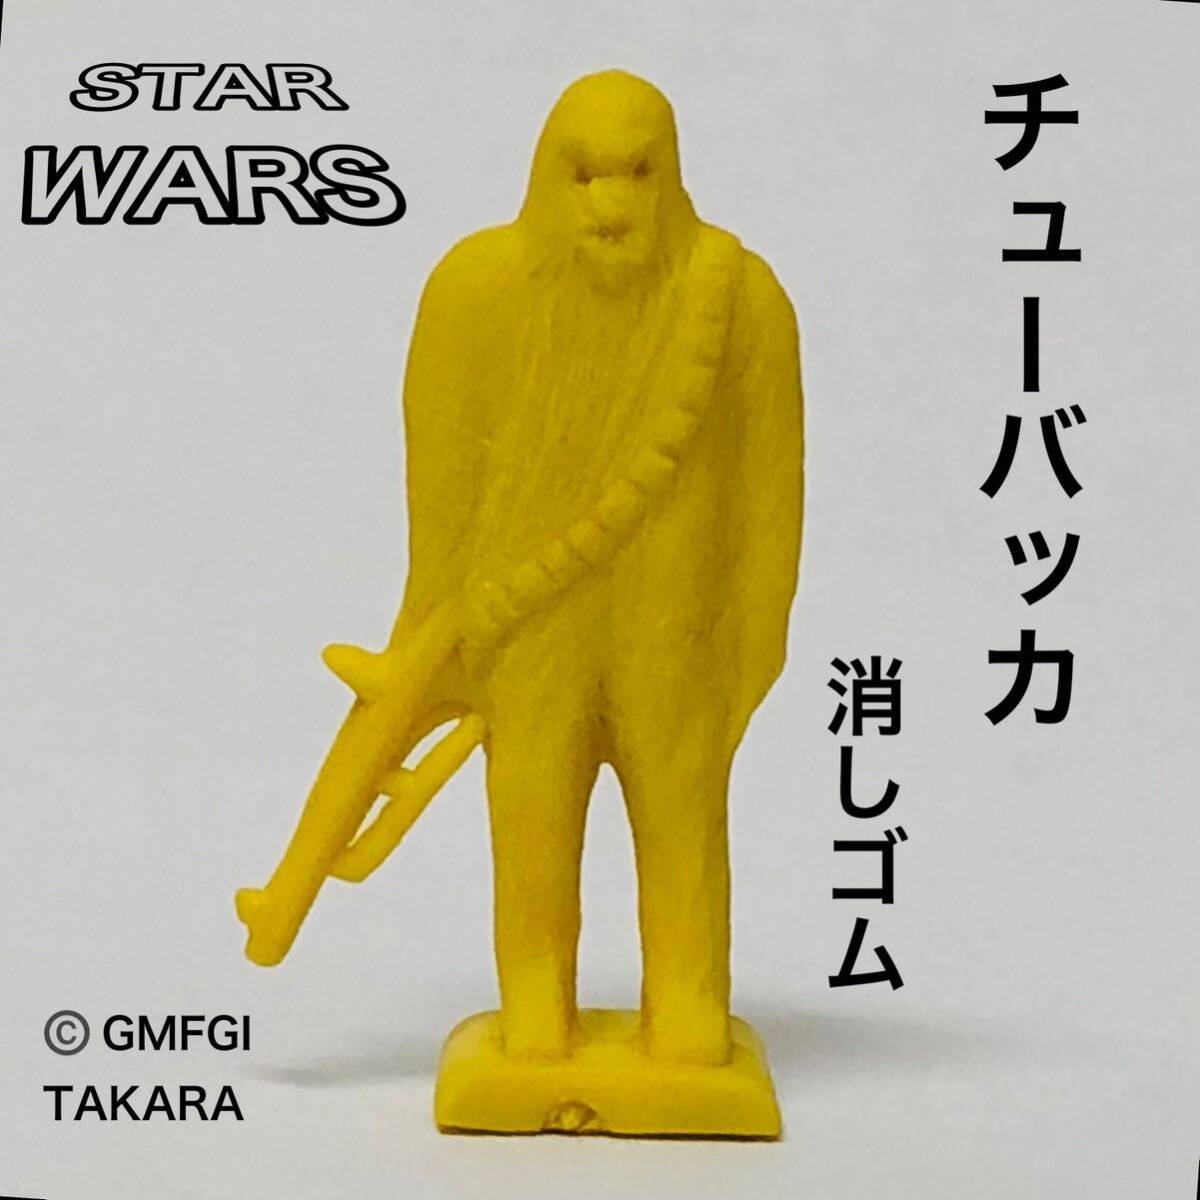 スターウォーズ GMFGI TAKARA 当時物 消しゴム 刻印有り チューバッカ フィギュア STAR WARSの画像1